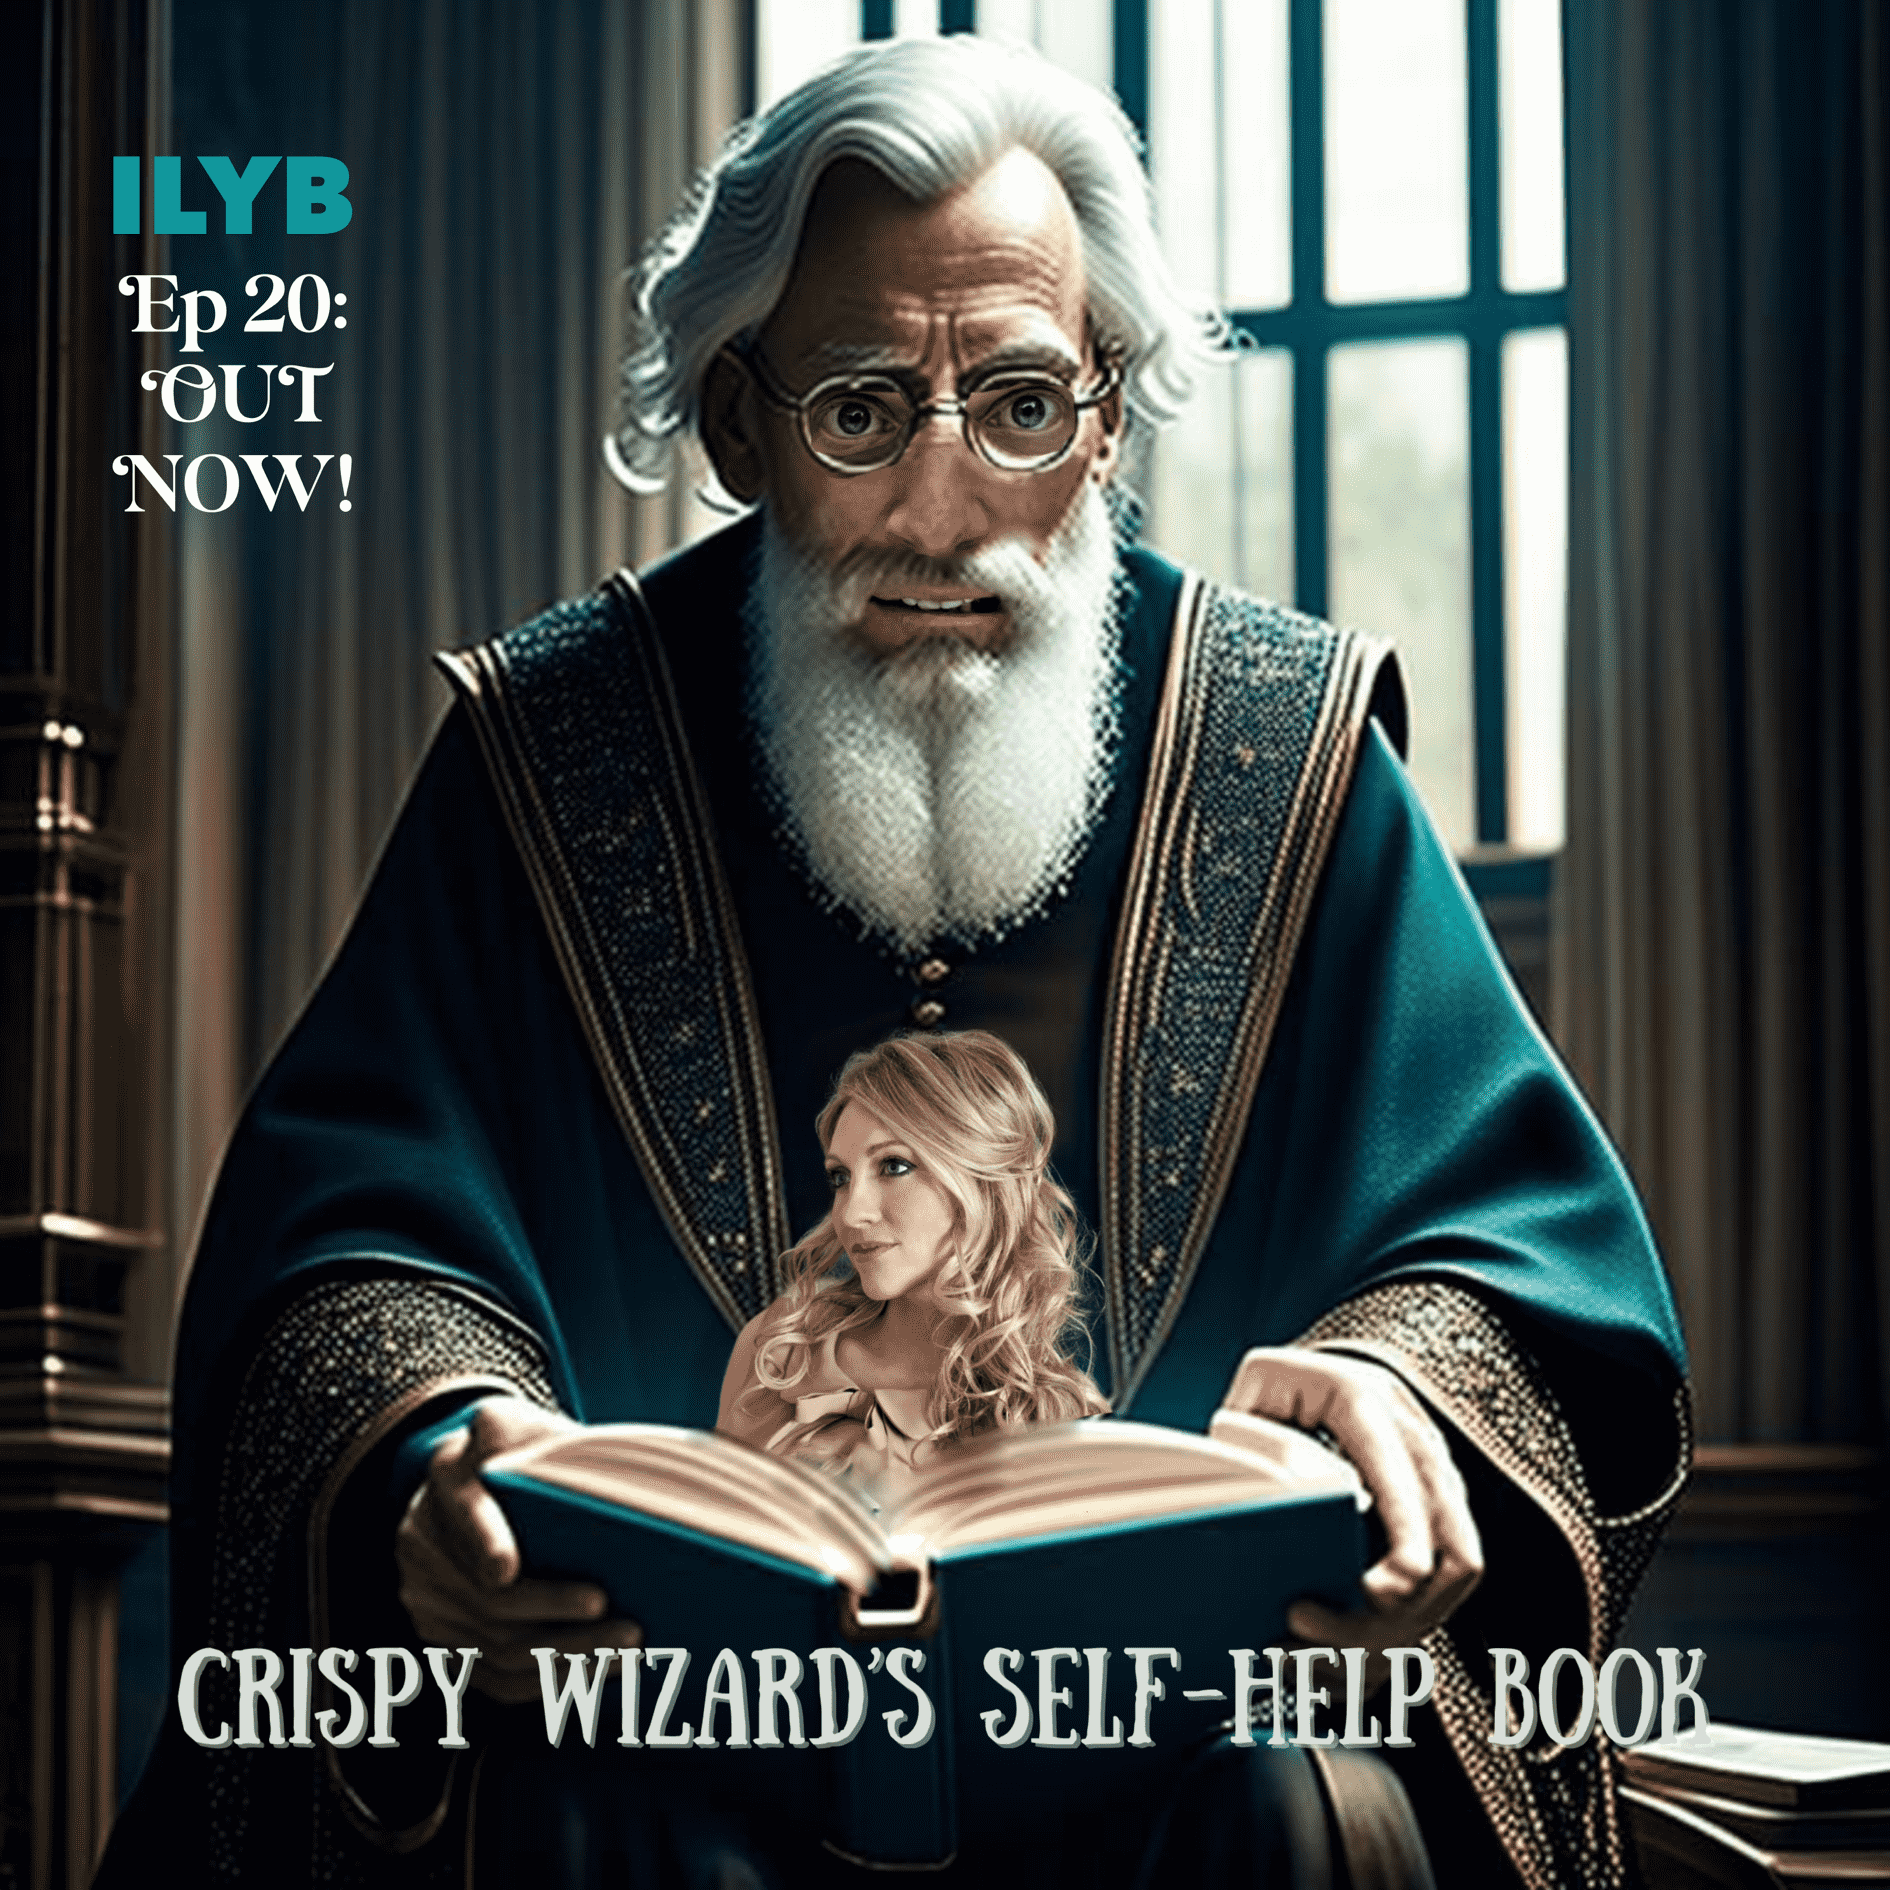 Crispy Wizard's Self-Help Book